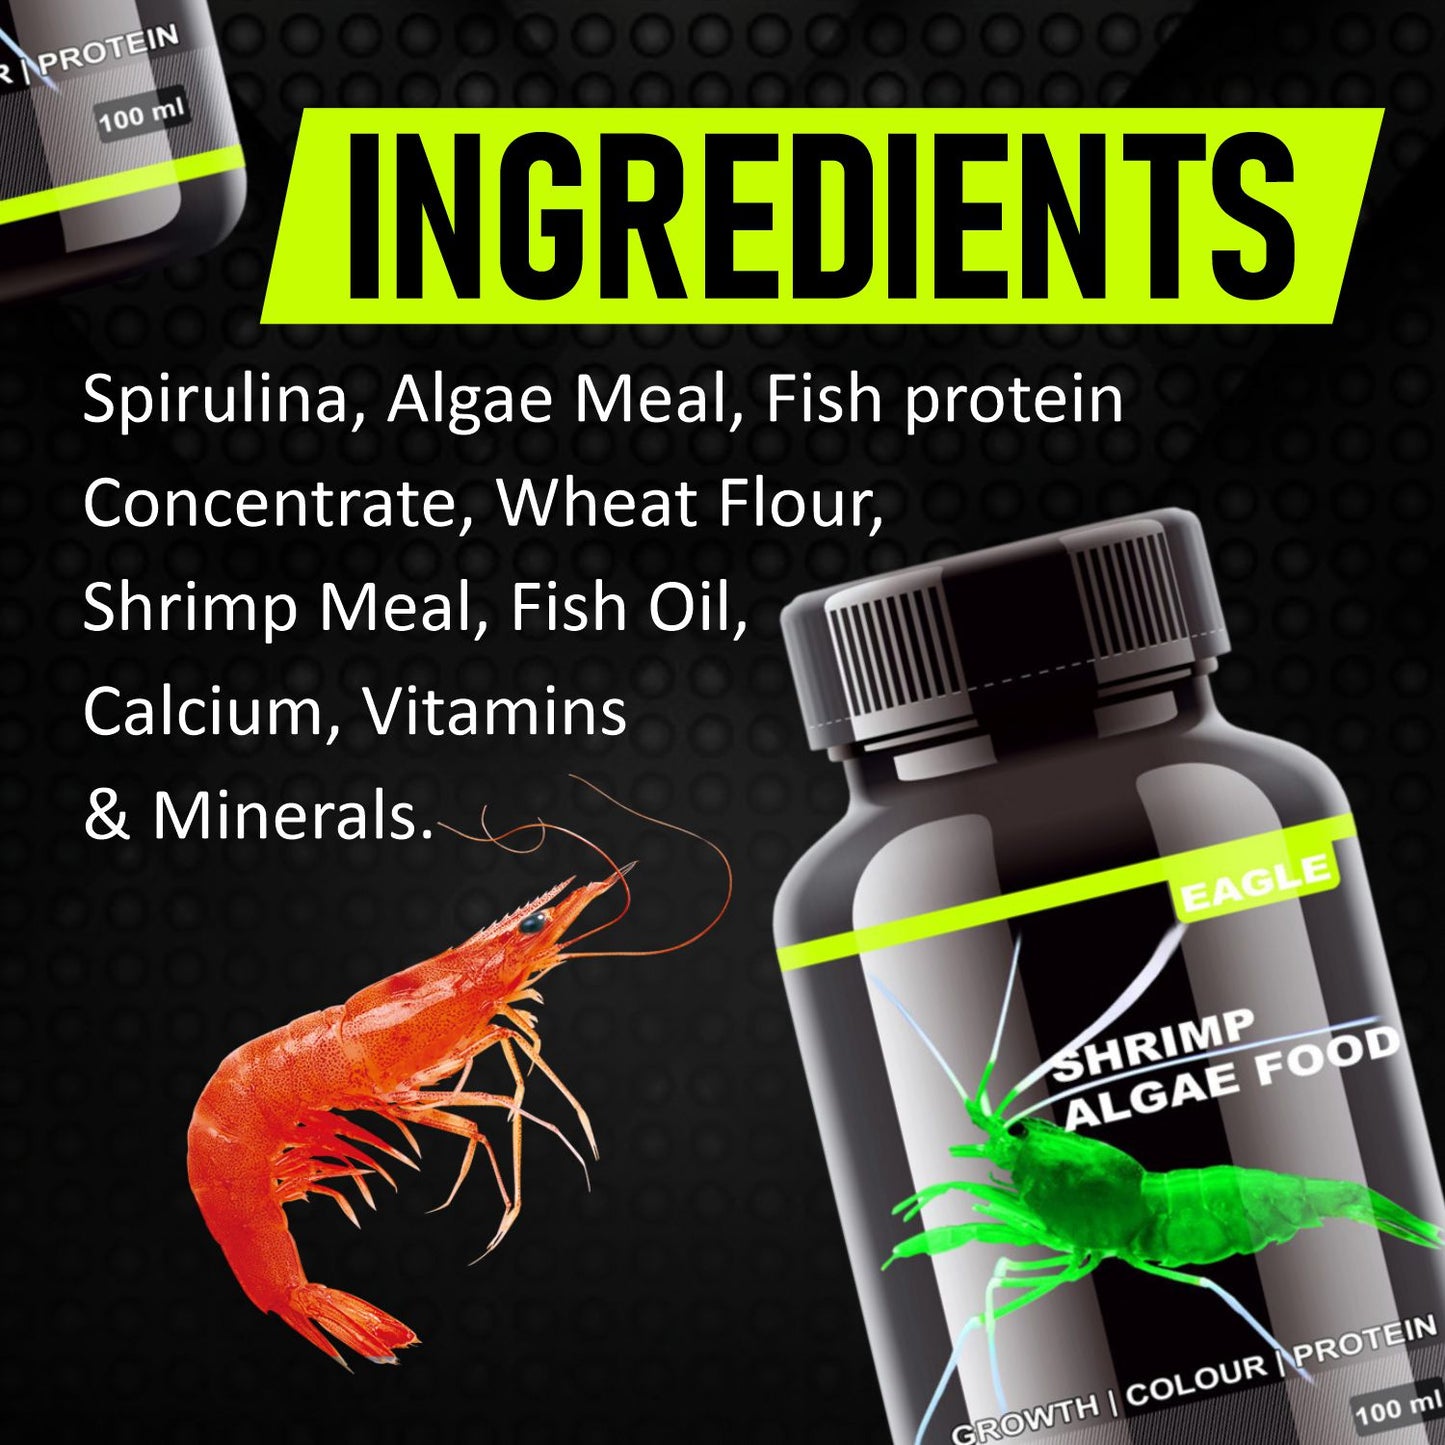 Eagle Shrimp Algae Food  100ML | Growth | Colour | Protein